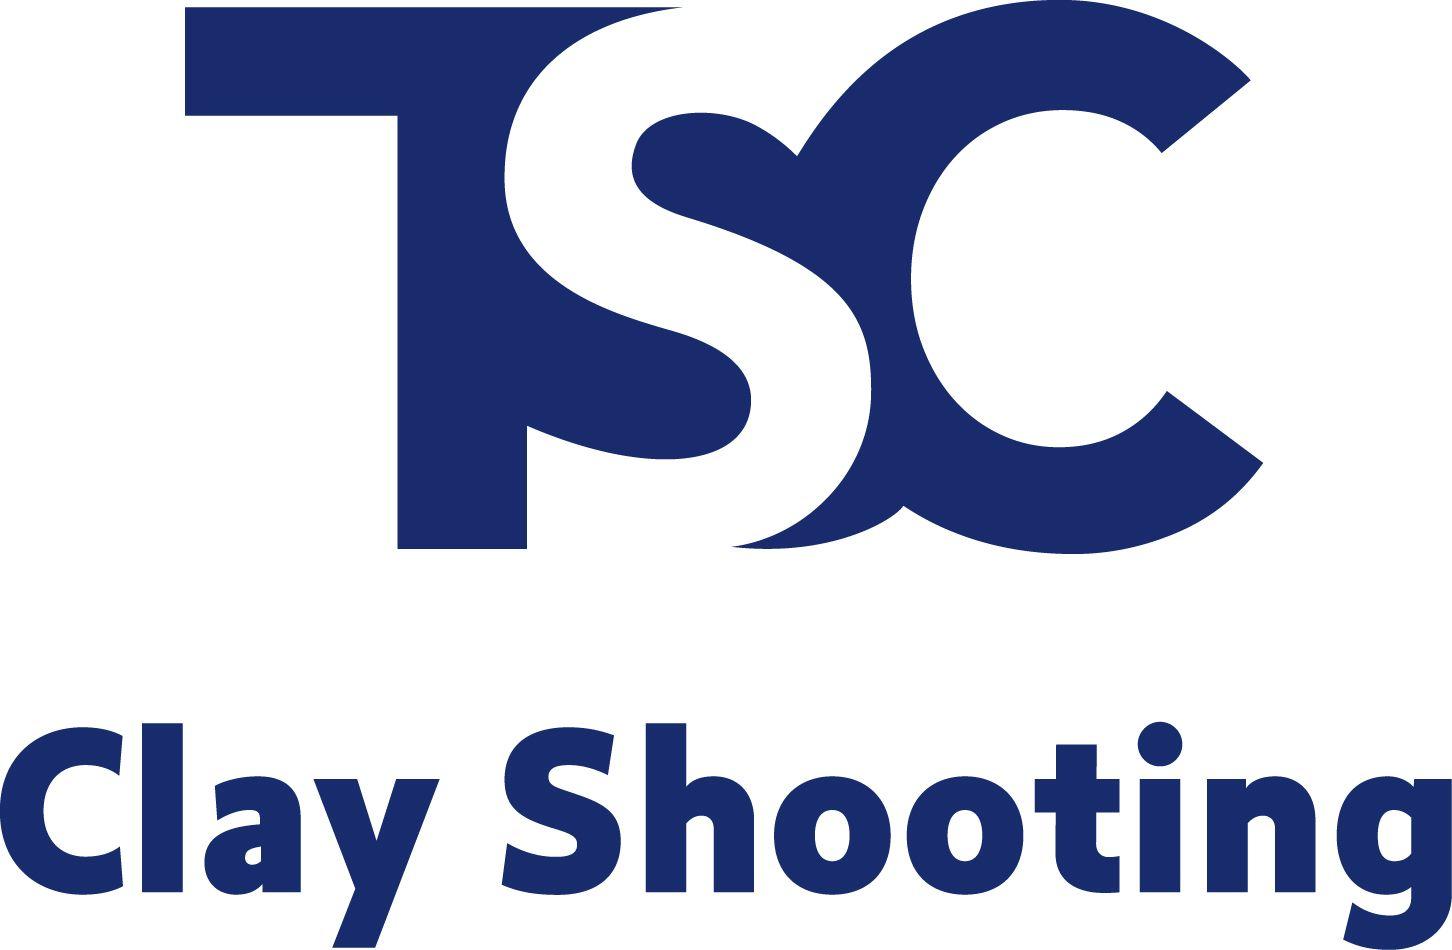 TSC Logo - The Schools Challenge Homepage